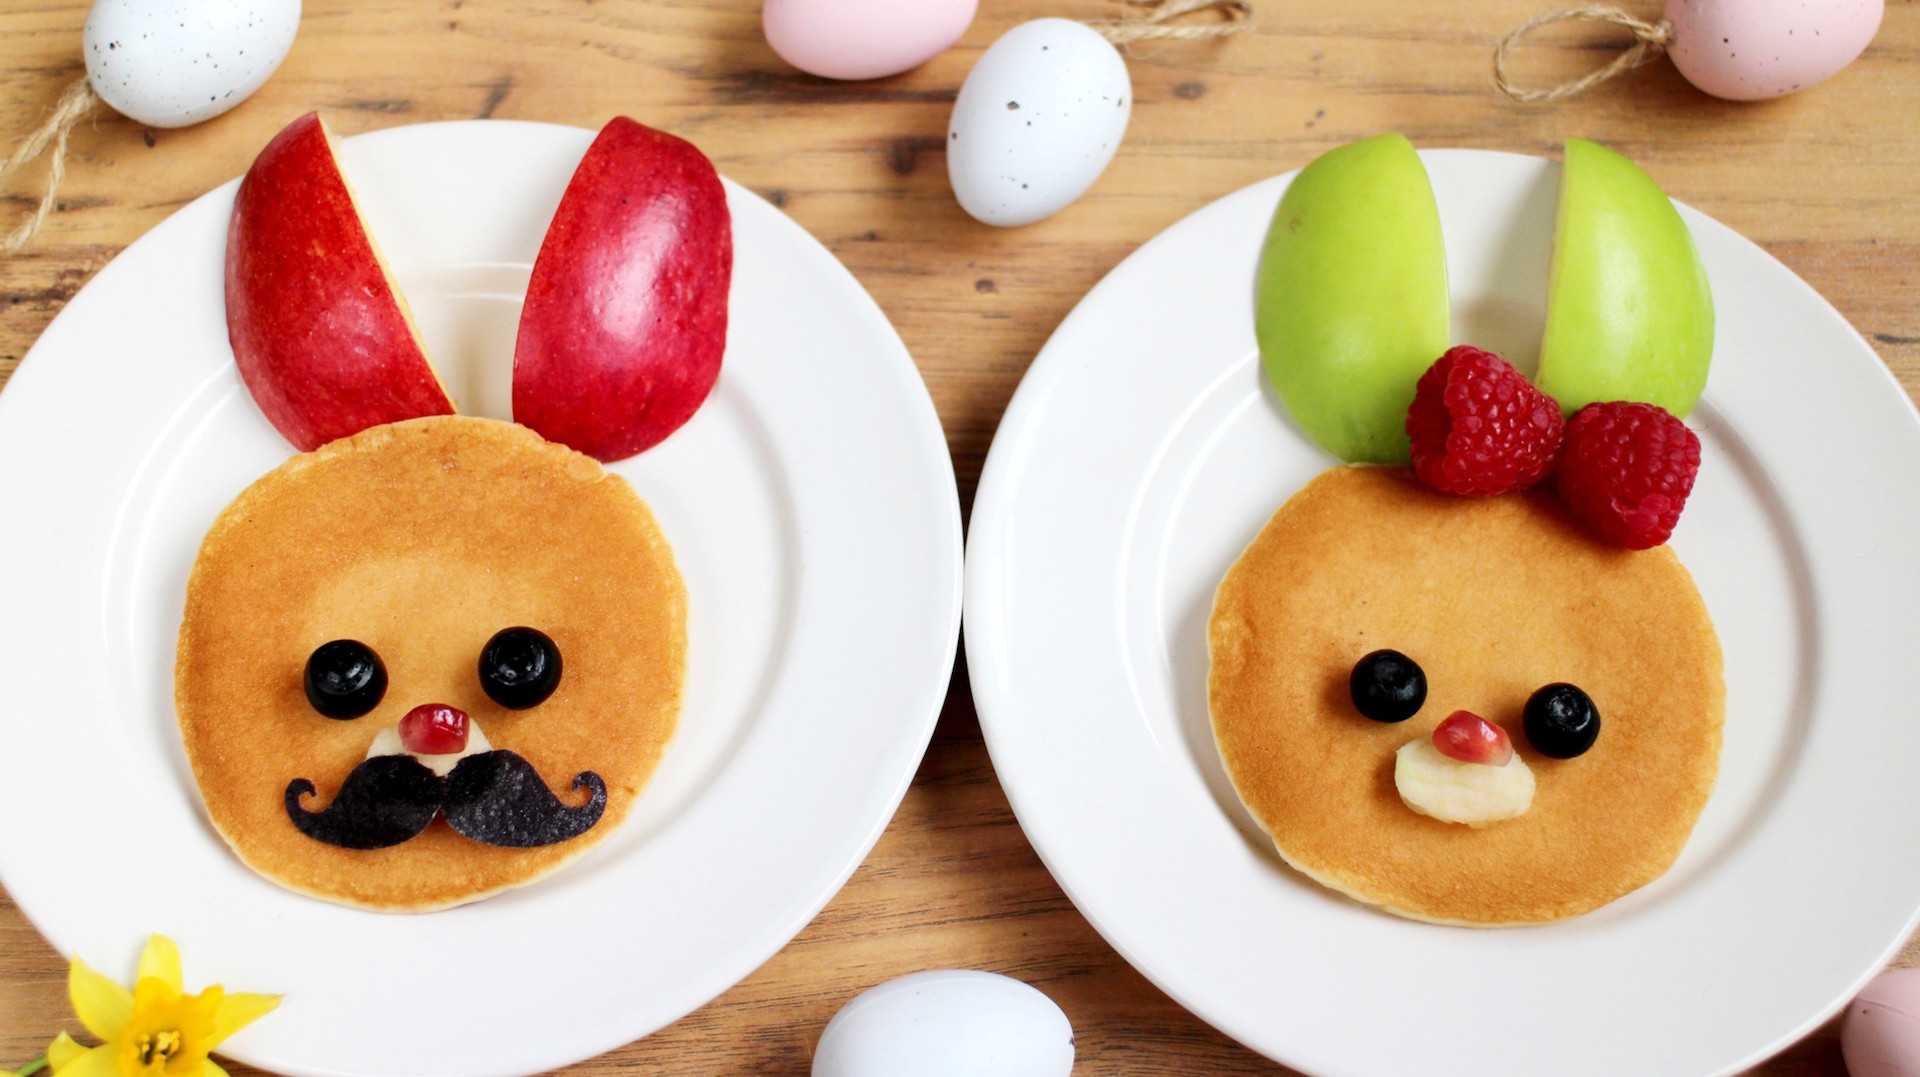 Easter Breakfast Ideas For Kids
 12 Cute Easter Breakfast Ideas Your Kids Will Love